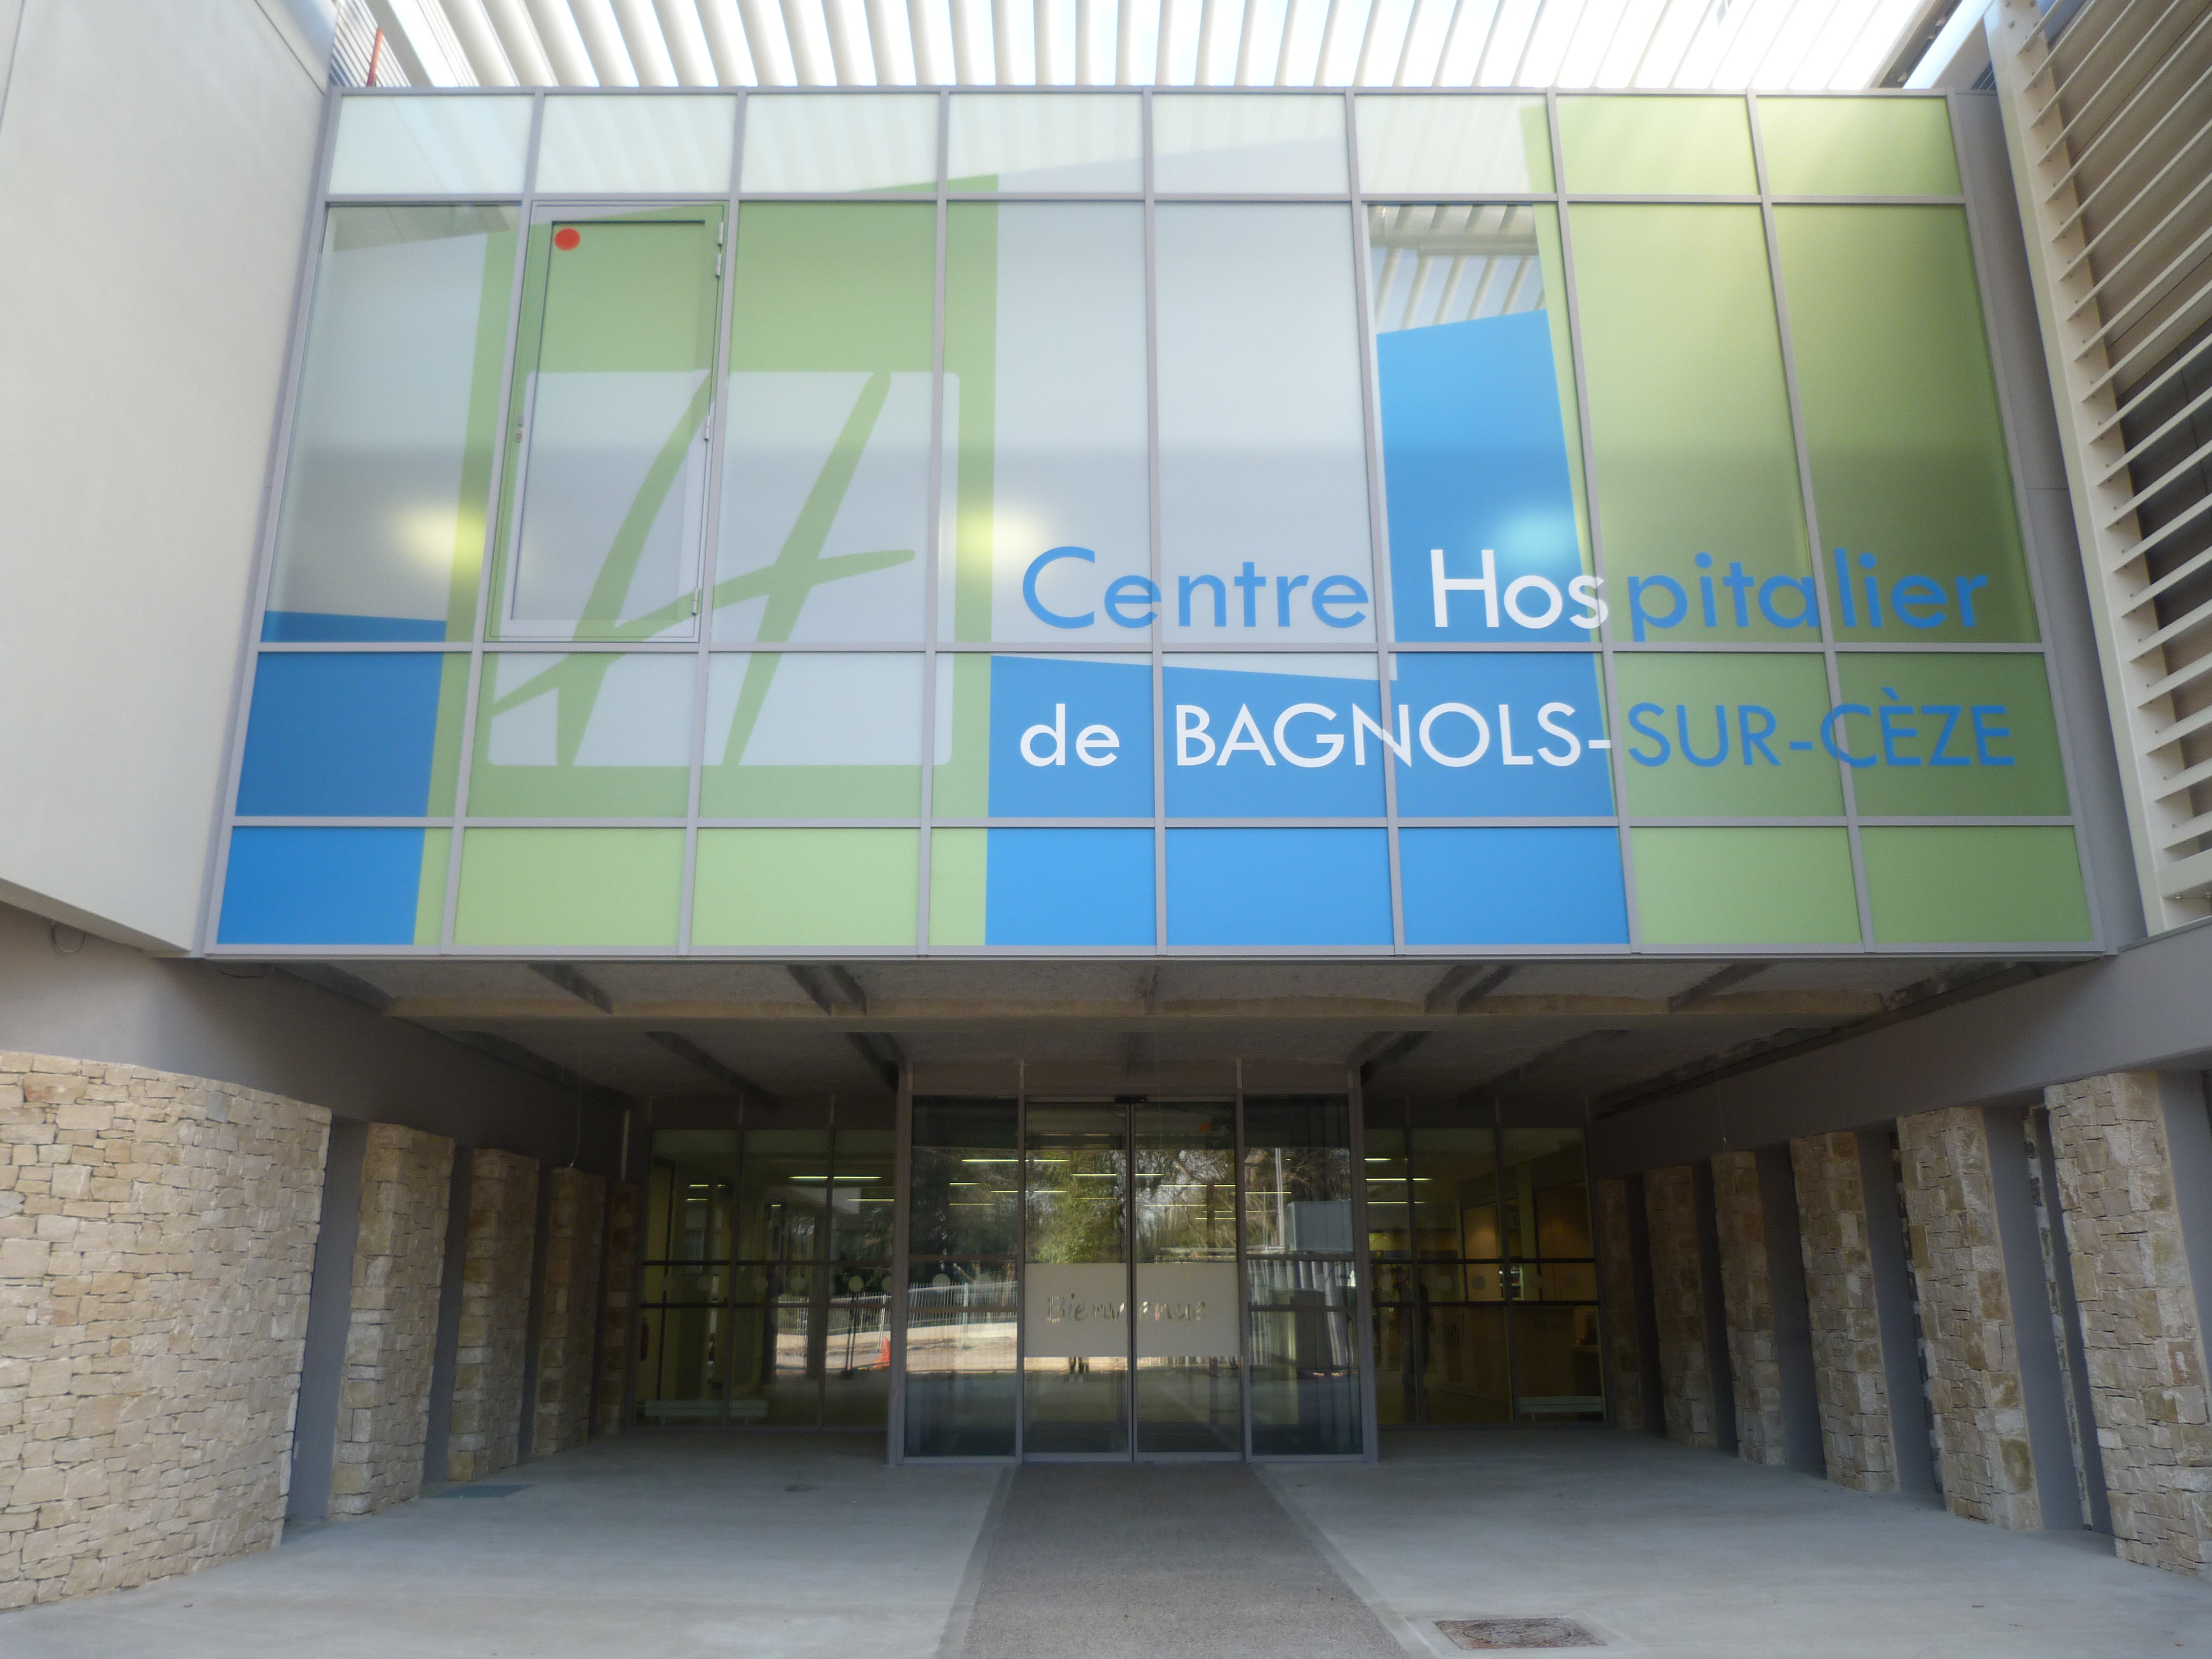 Centre Hospitalier de Bagnols-sur-Cèze  (Bagnols-sur-Cèze)